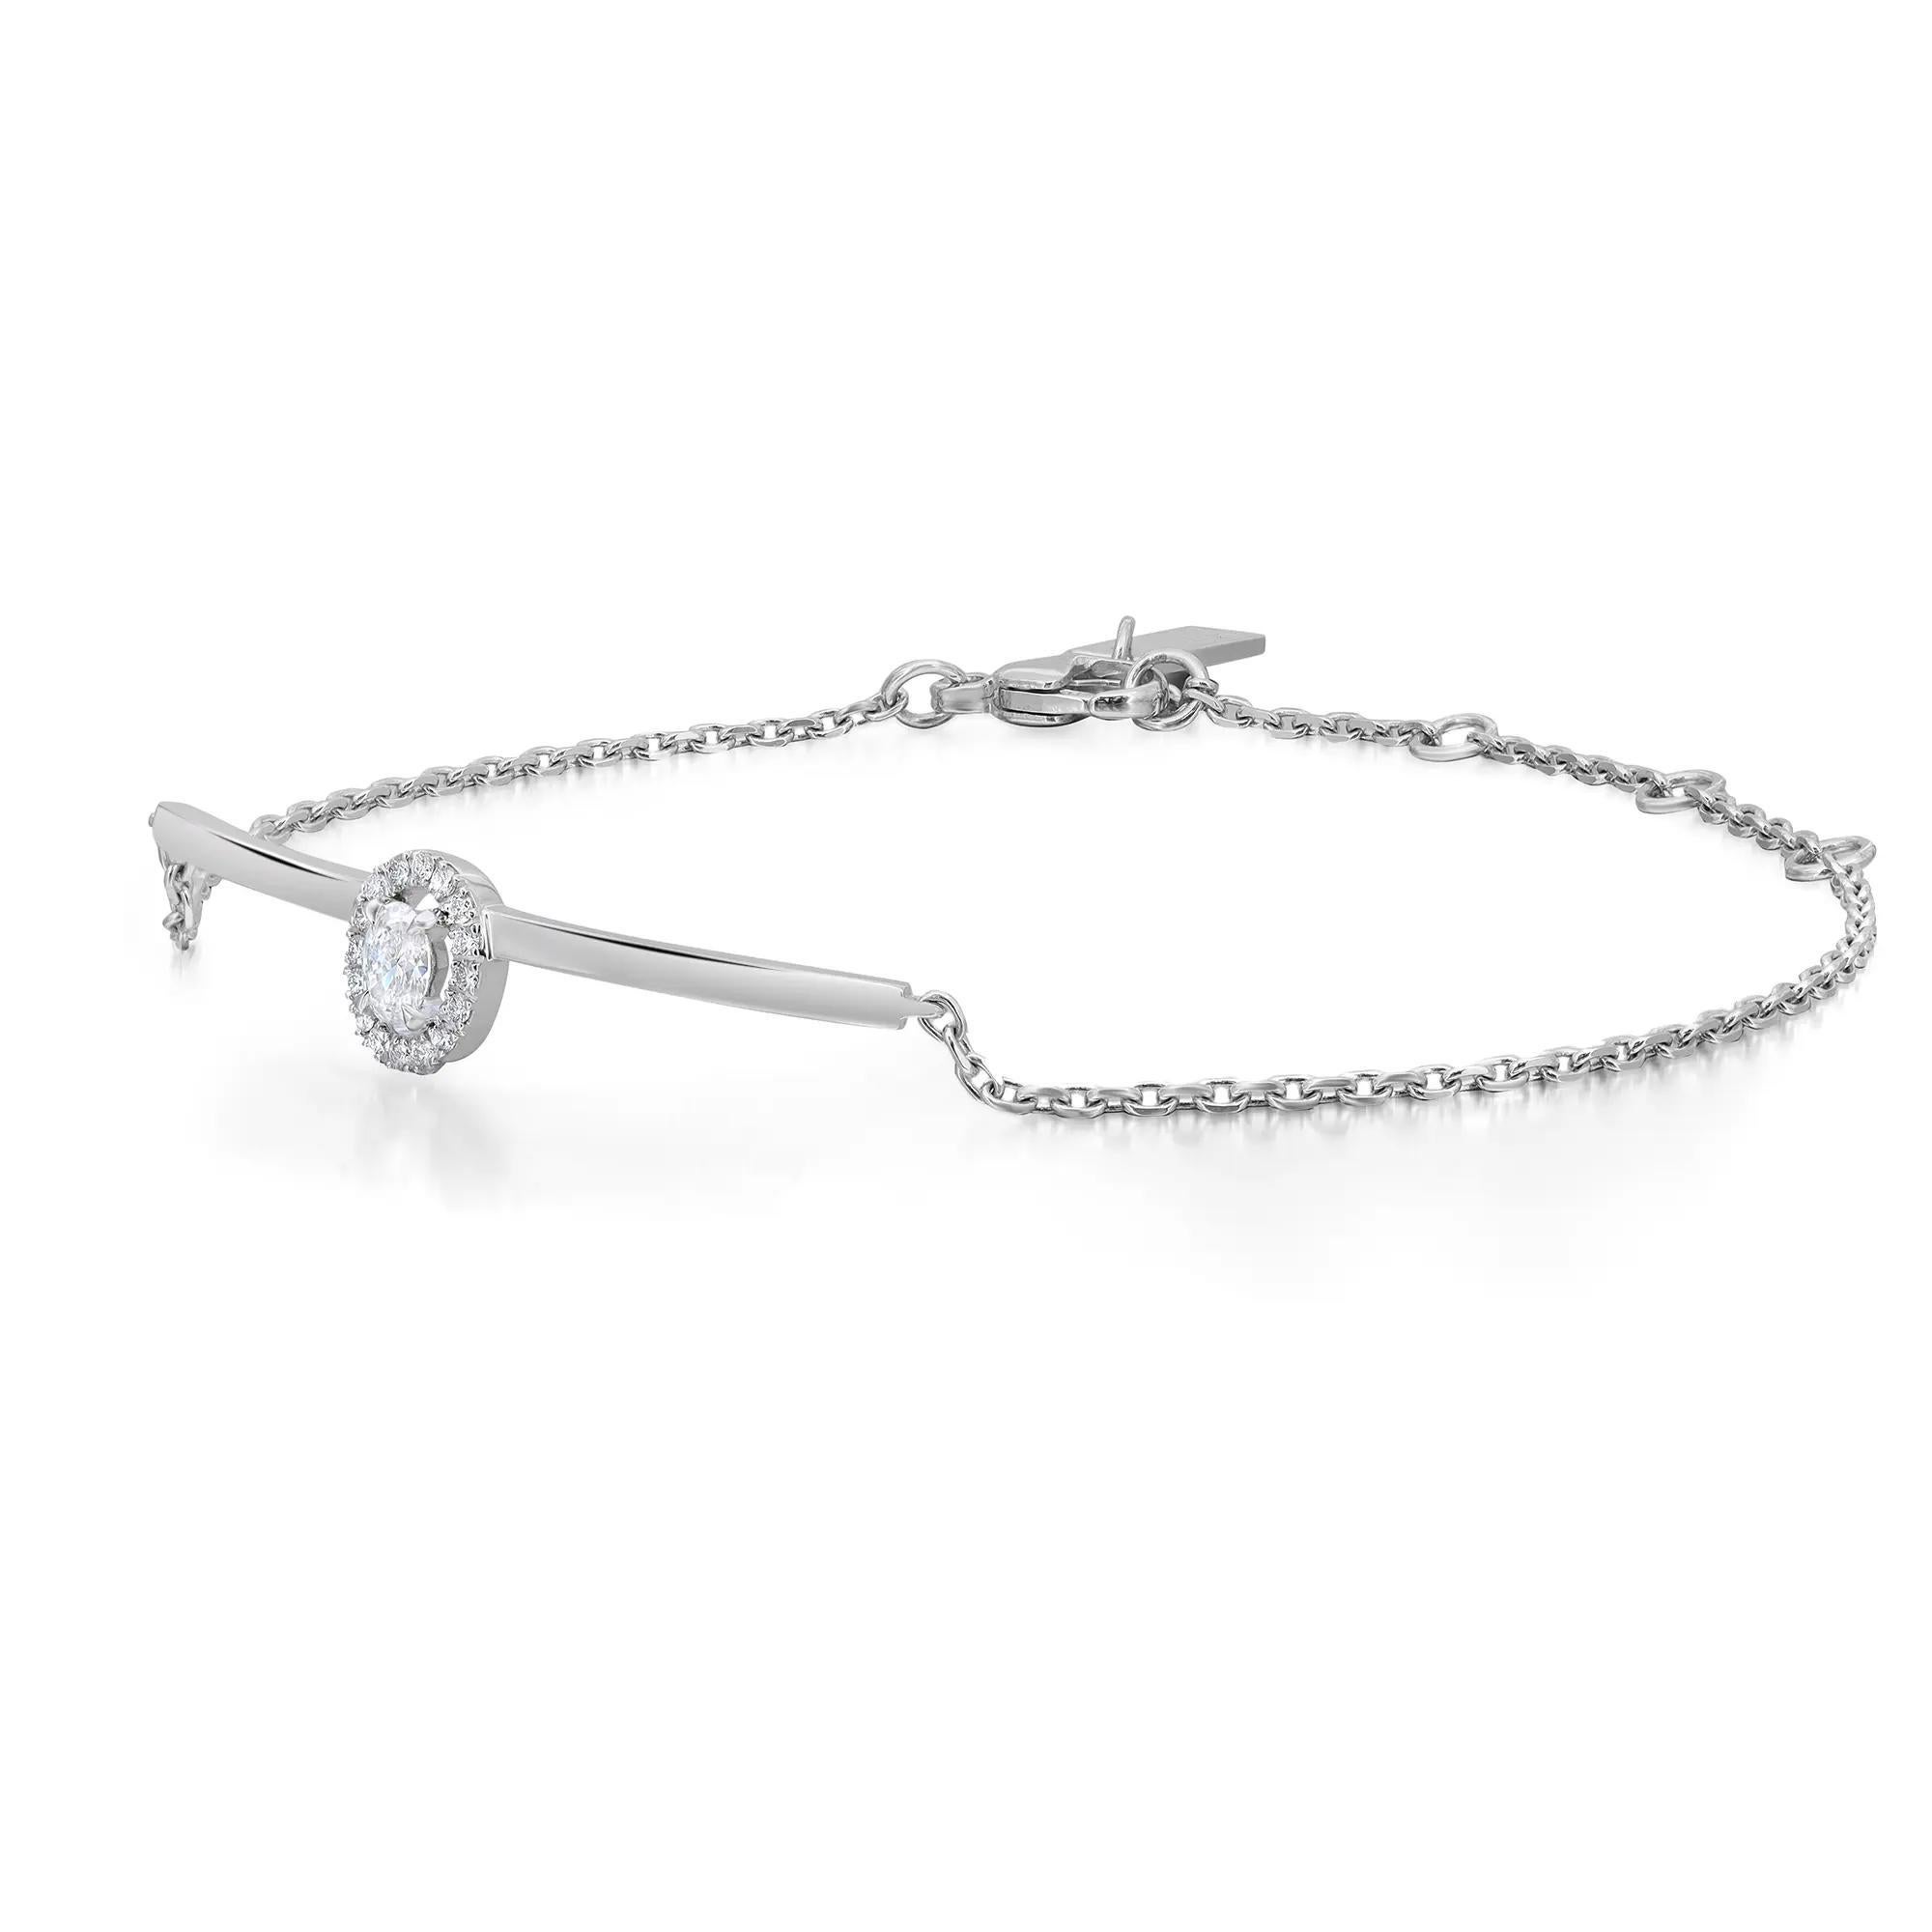 Eleg, cet élégant bracelet à chaîne en diamants Messika Glam'Azone est parfait pour un look de tous les jours. Whiting en or blanc 18 carats hautement poli. Elle est ornée d'un diamant ovale étincelant serti sur la pointe et d'un halo de diamants